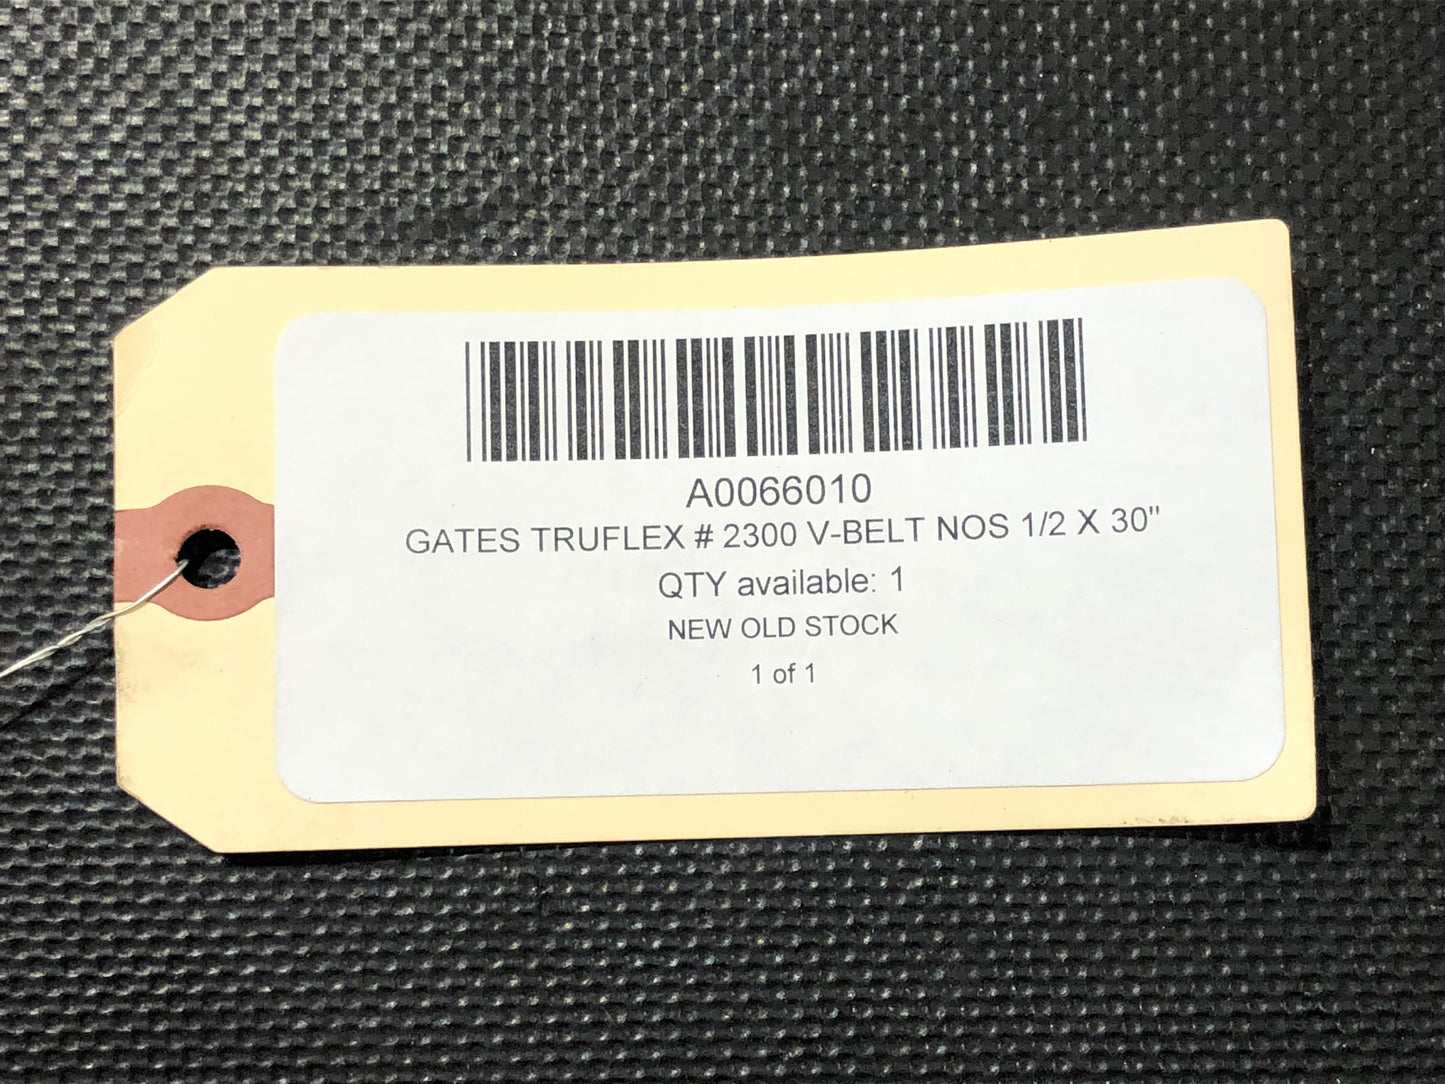 Gates Truflex # 2300 V-Belt NOS 1/2 X 30"